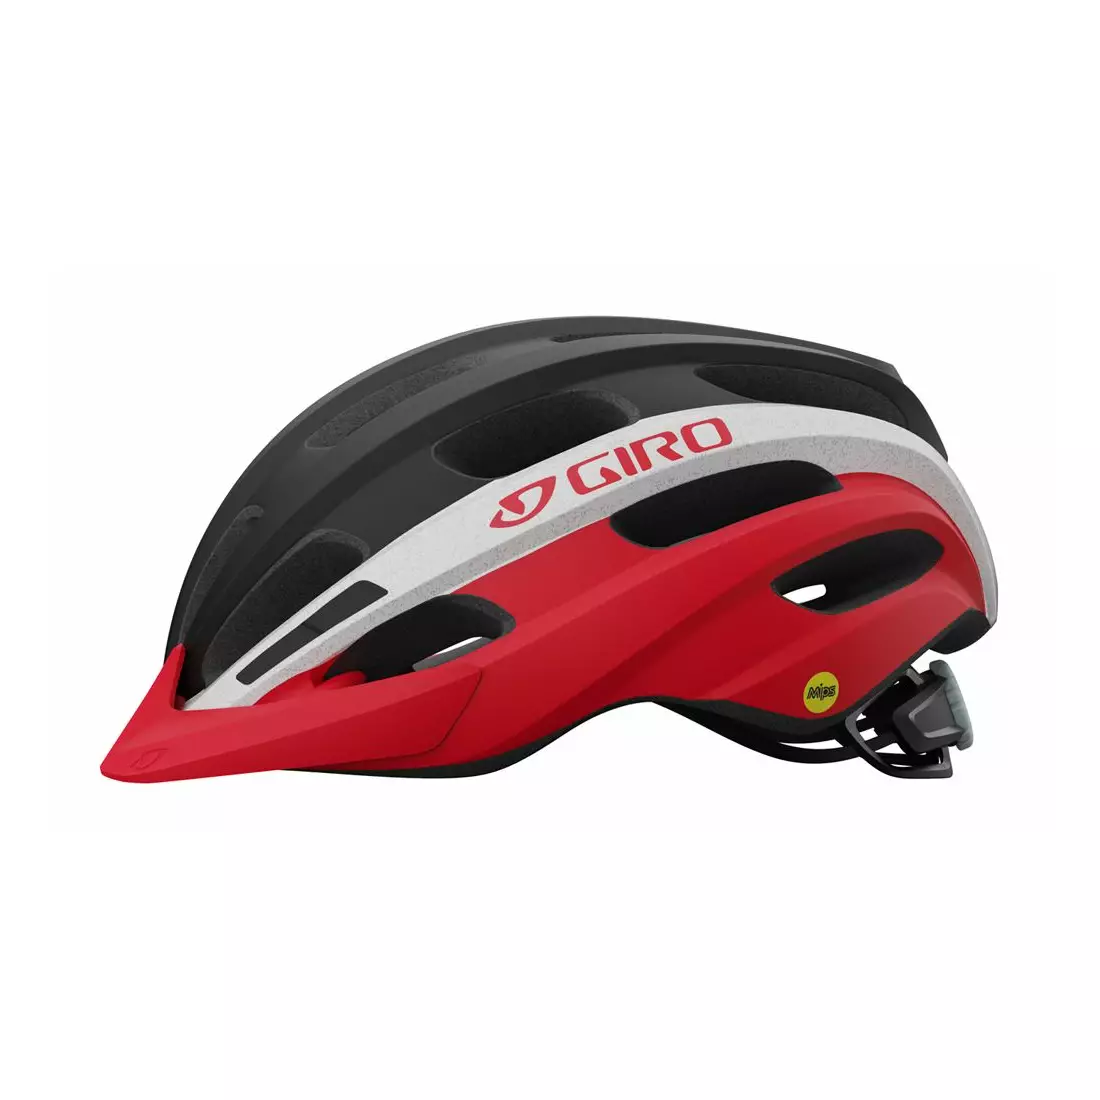 GIRO bicycle helmet mtb REGISTER INTEGRATED MIPS matte black red GR-7129833